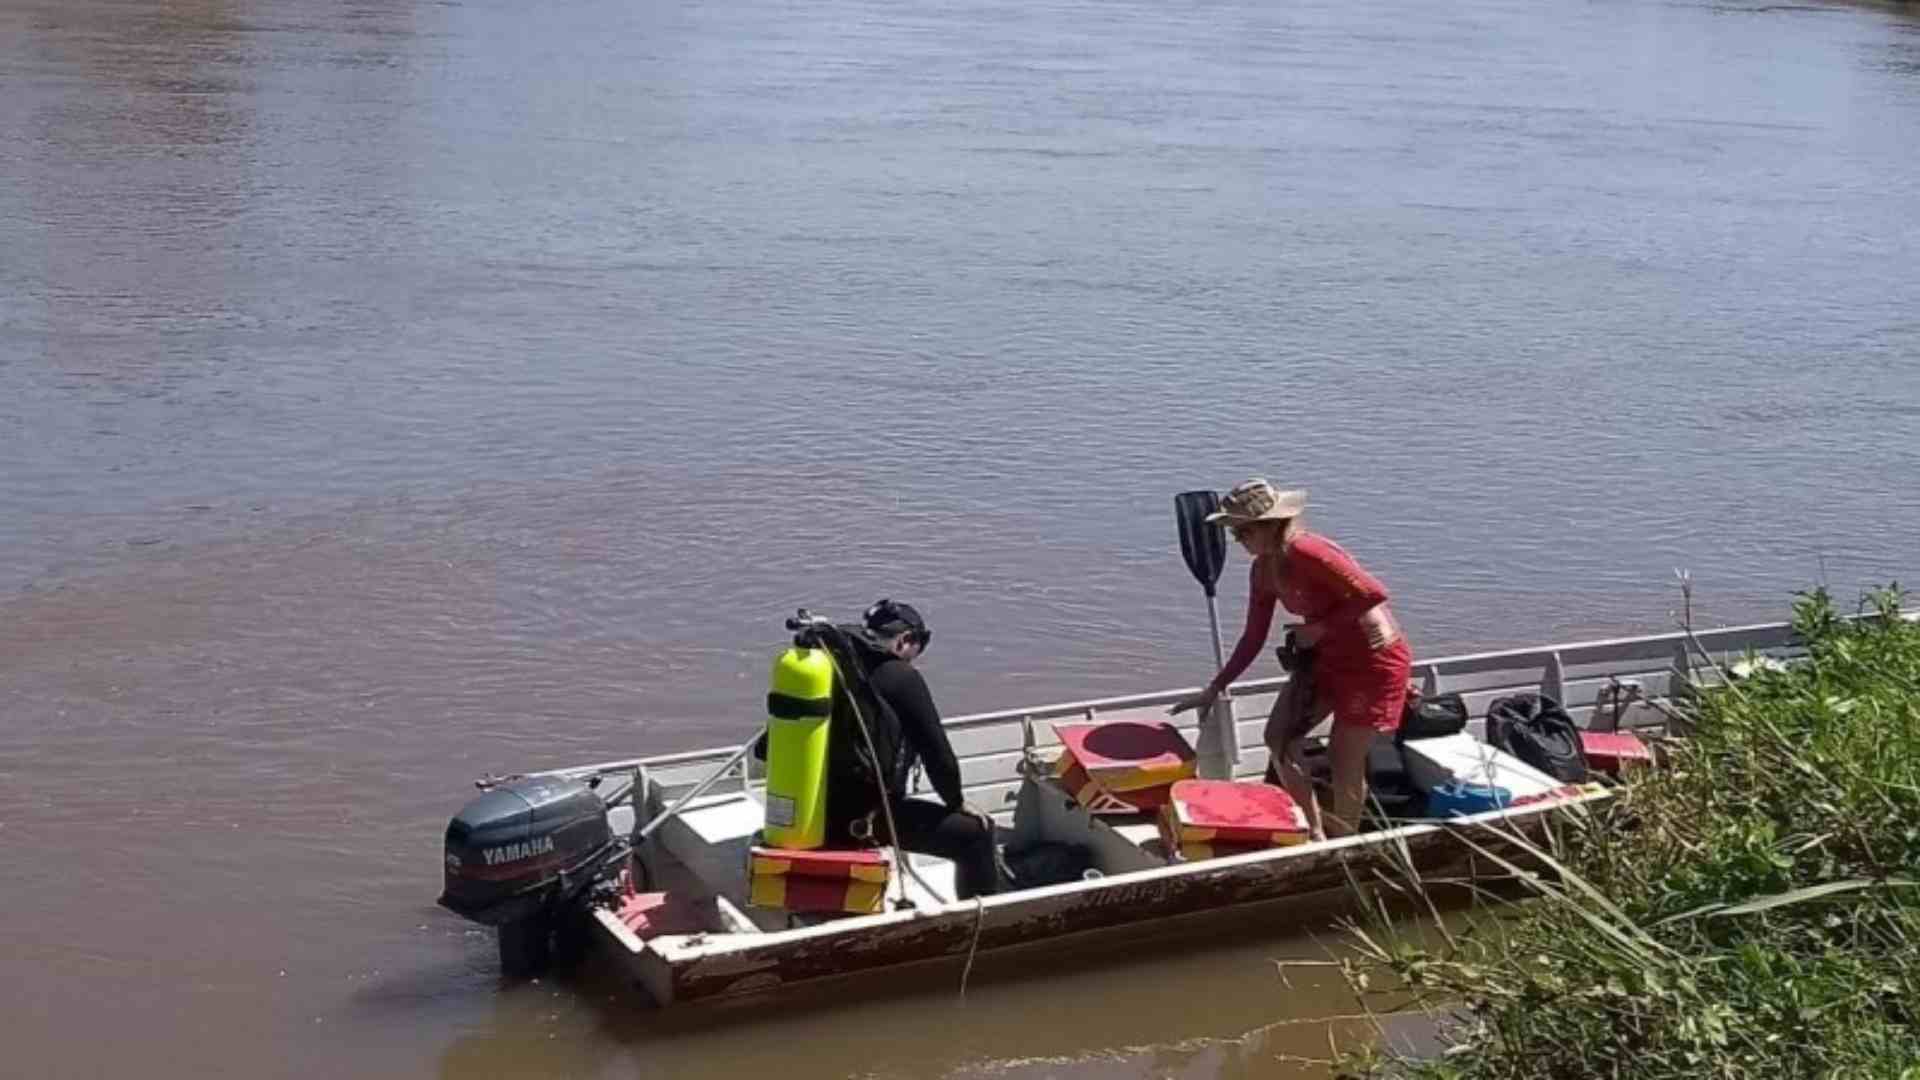 Durante pescaria e bebedeira entre amigos, homem cai de barco e some em rio